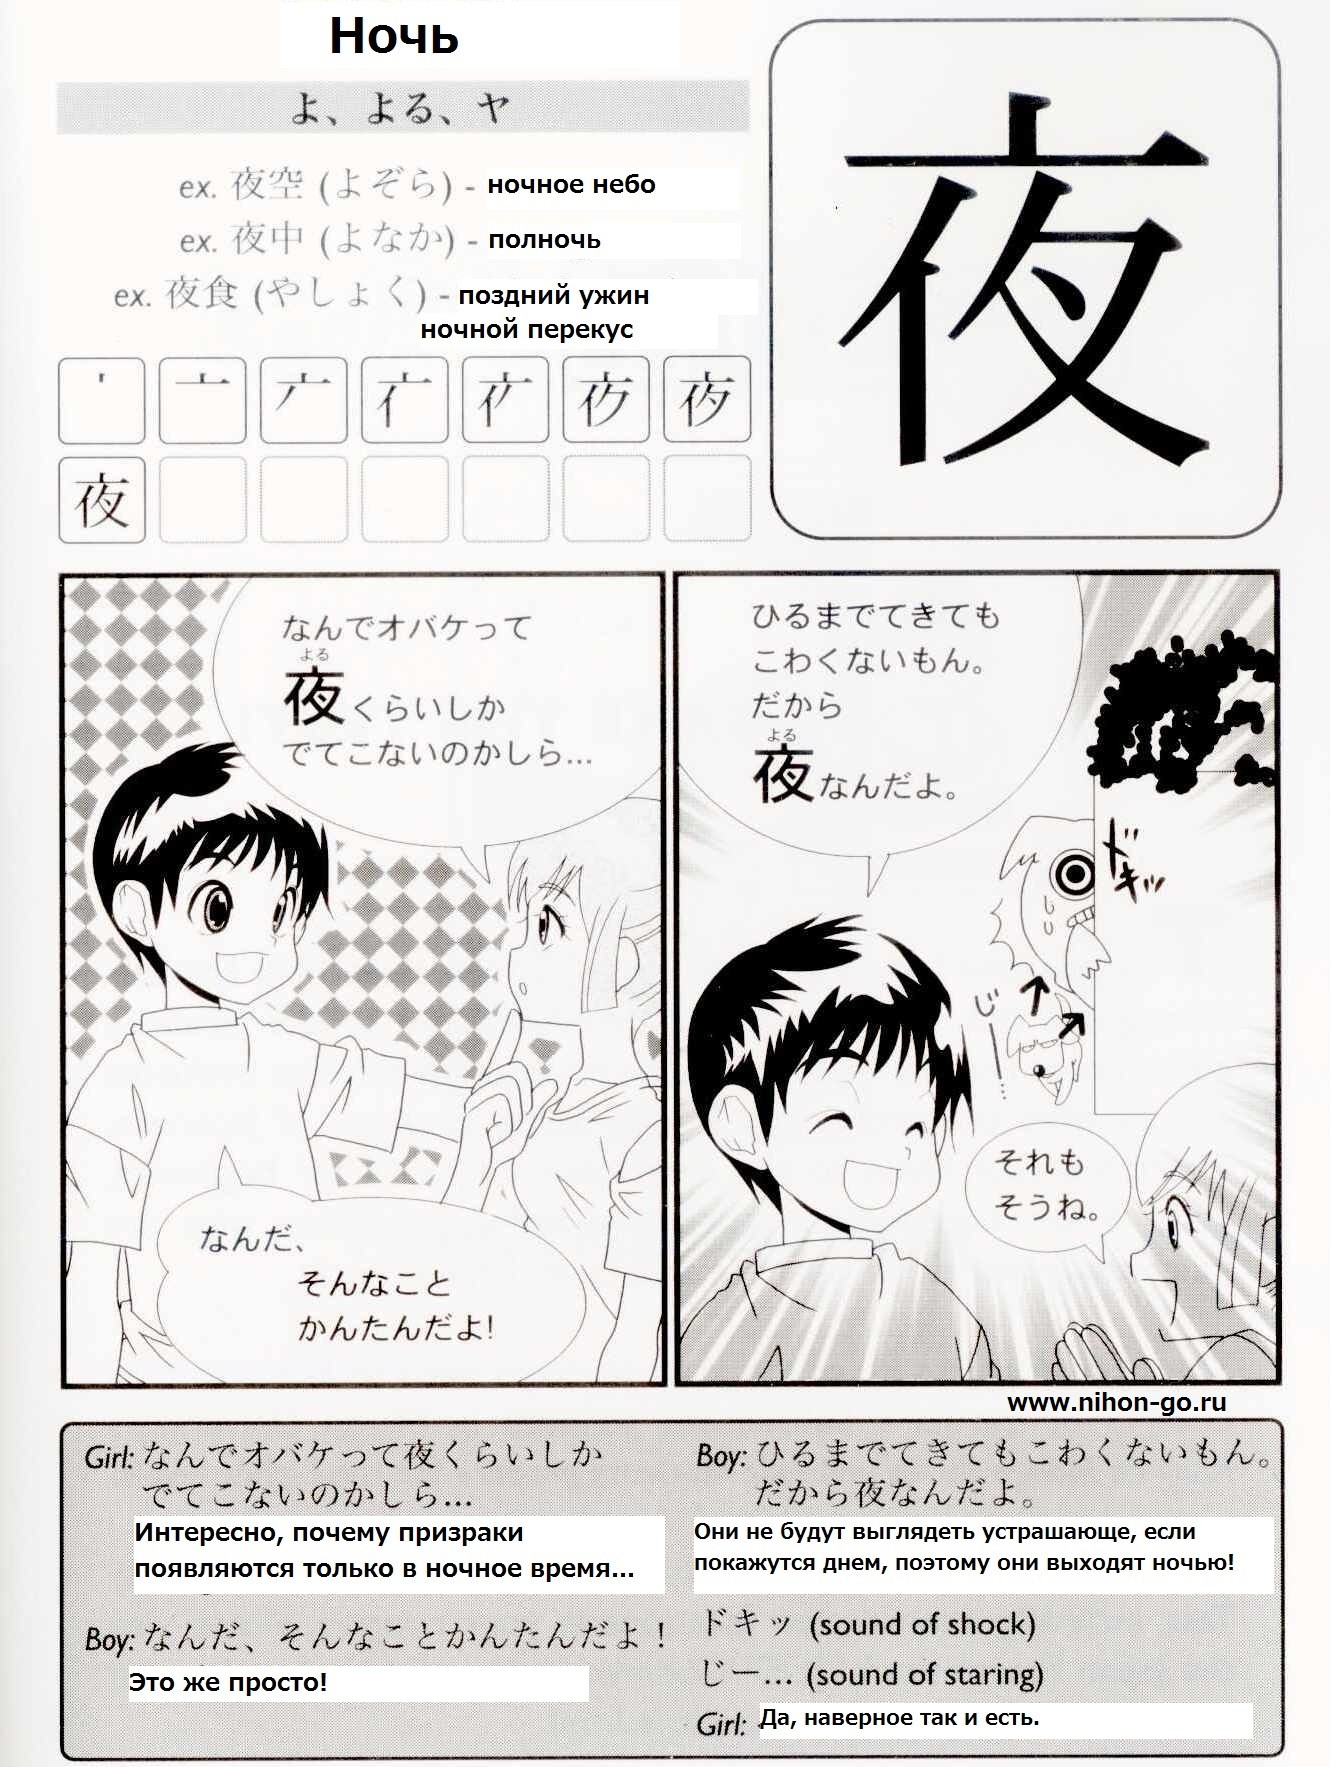 Японский уроки для начинающих. Манга на японском. Японские комиксы на японсеомязыке. Комиксы на японском языке. Японский текст.